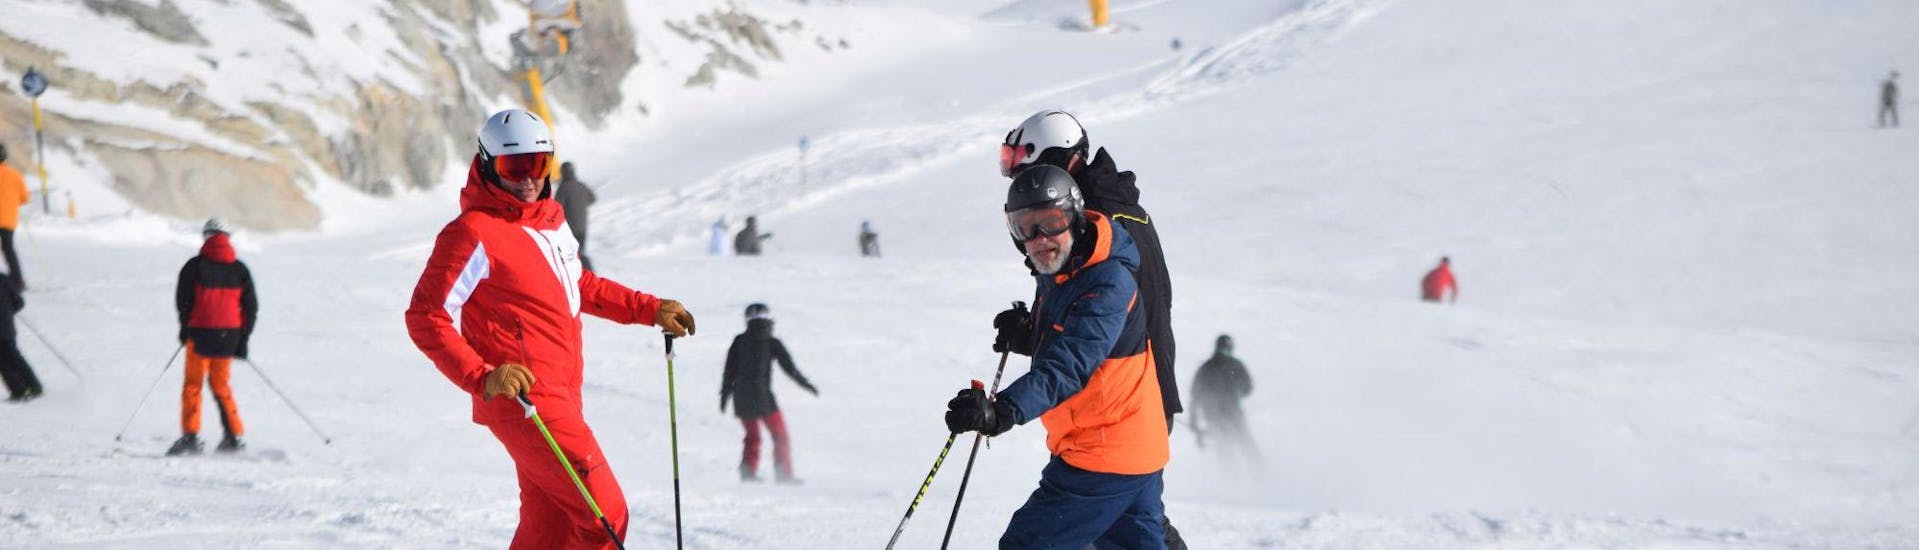 Cours de ski Adultes dès 15 ans pour Tous niveaux.